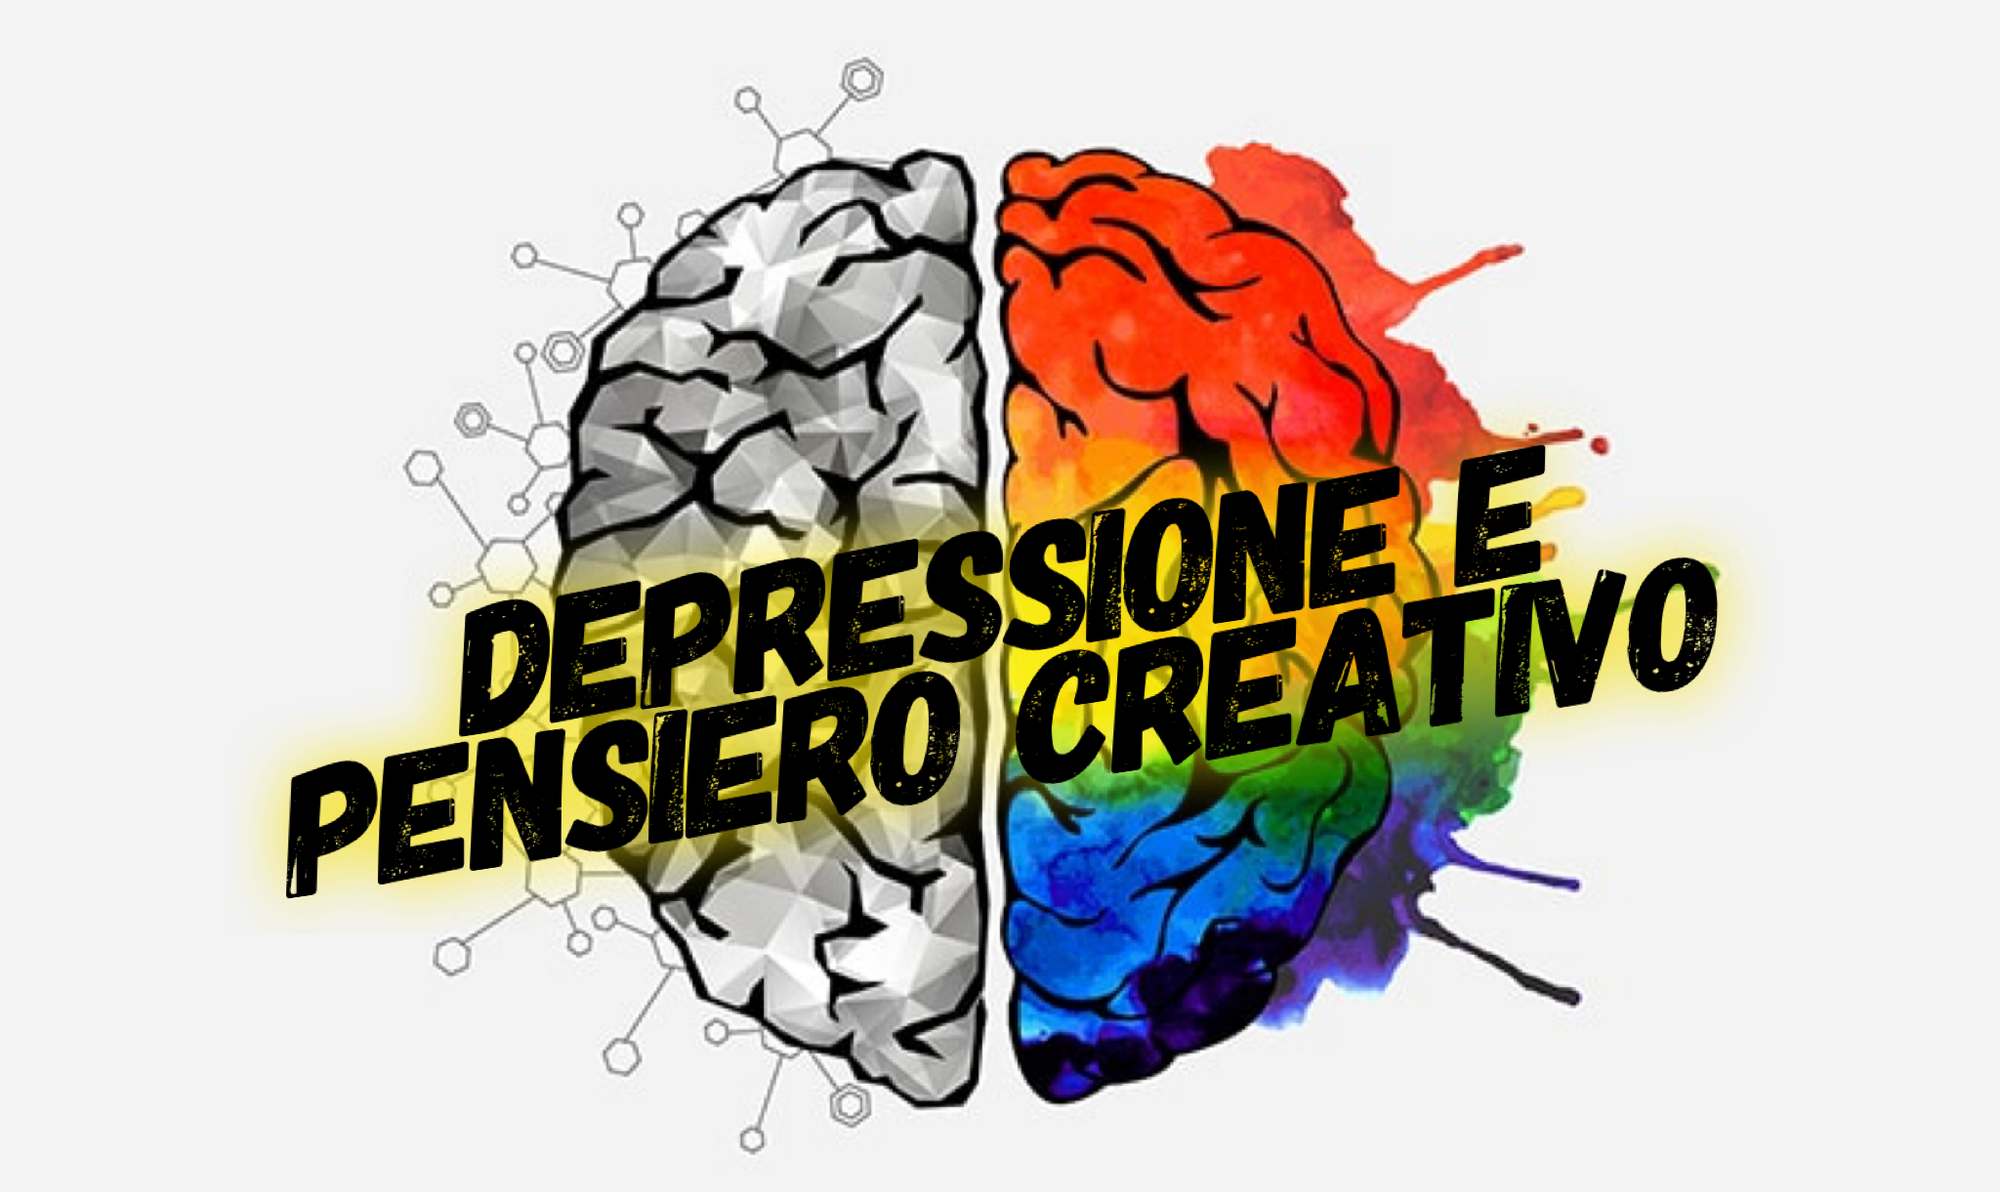 Depressione e pensiero creativo